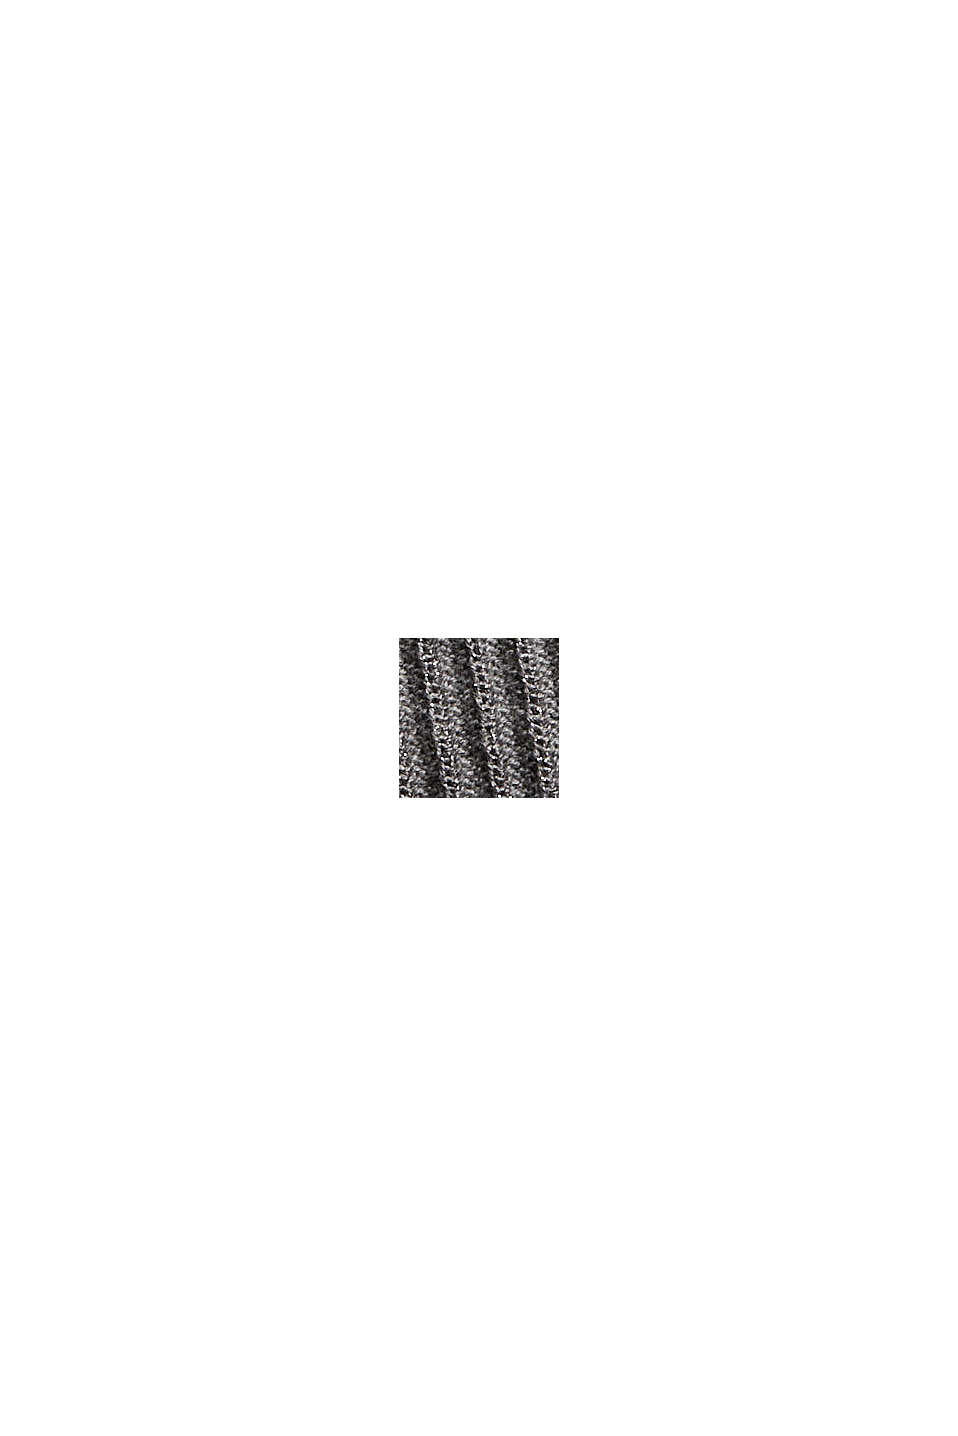 Jersey de manga corta con cuello de polo, algodón ecológico, MEDIUM GREY, swatch